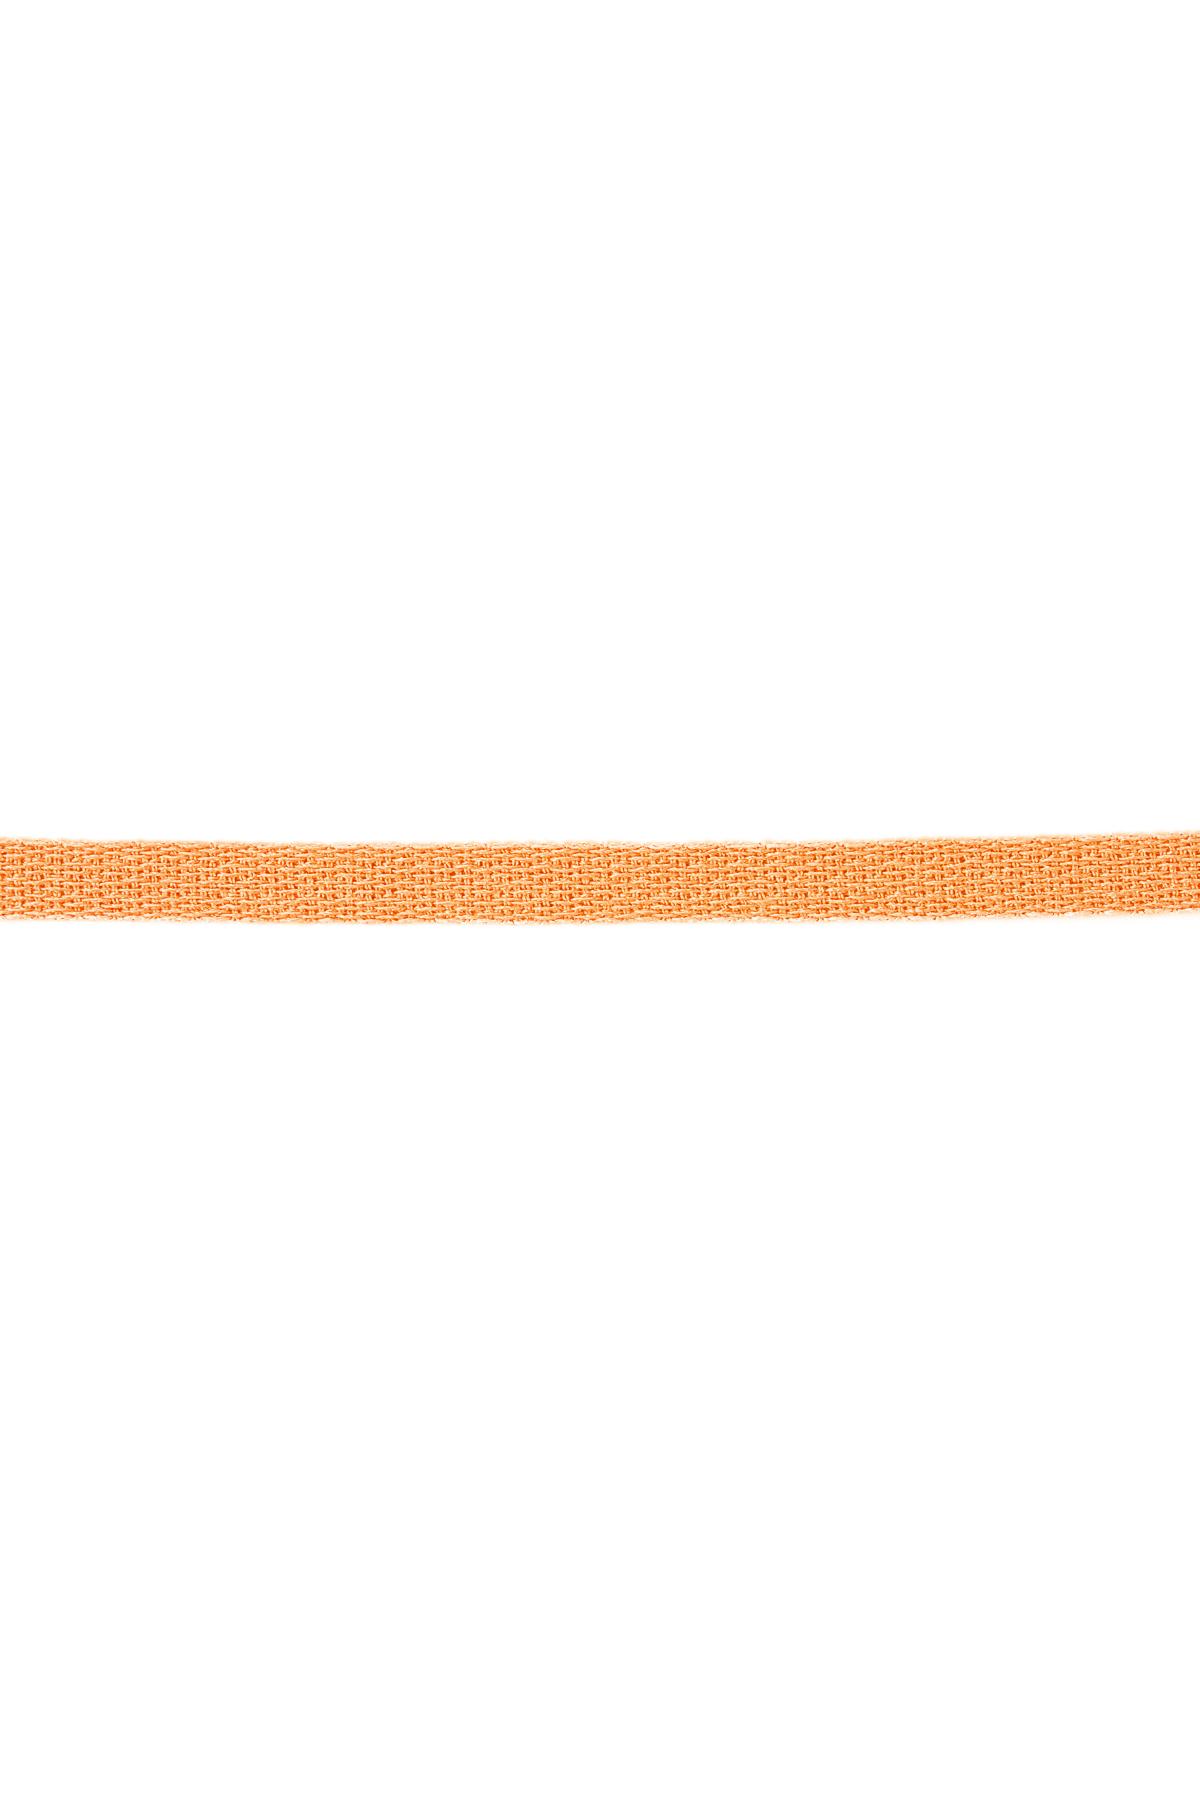 Armbandband einfarbig Orange Polyester